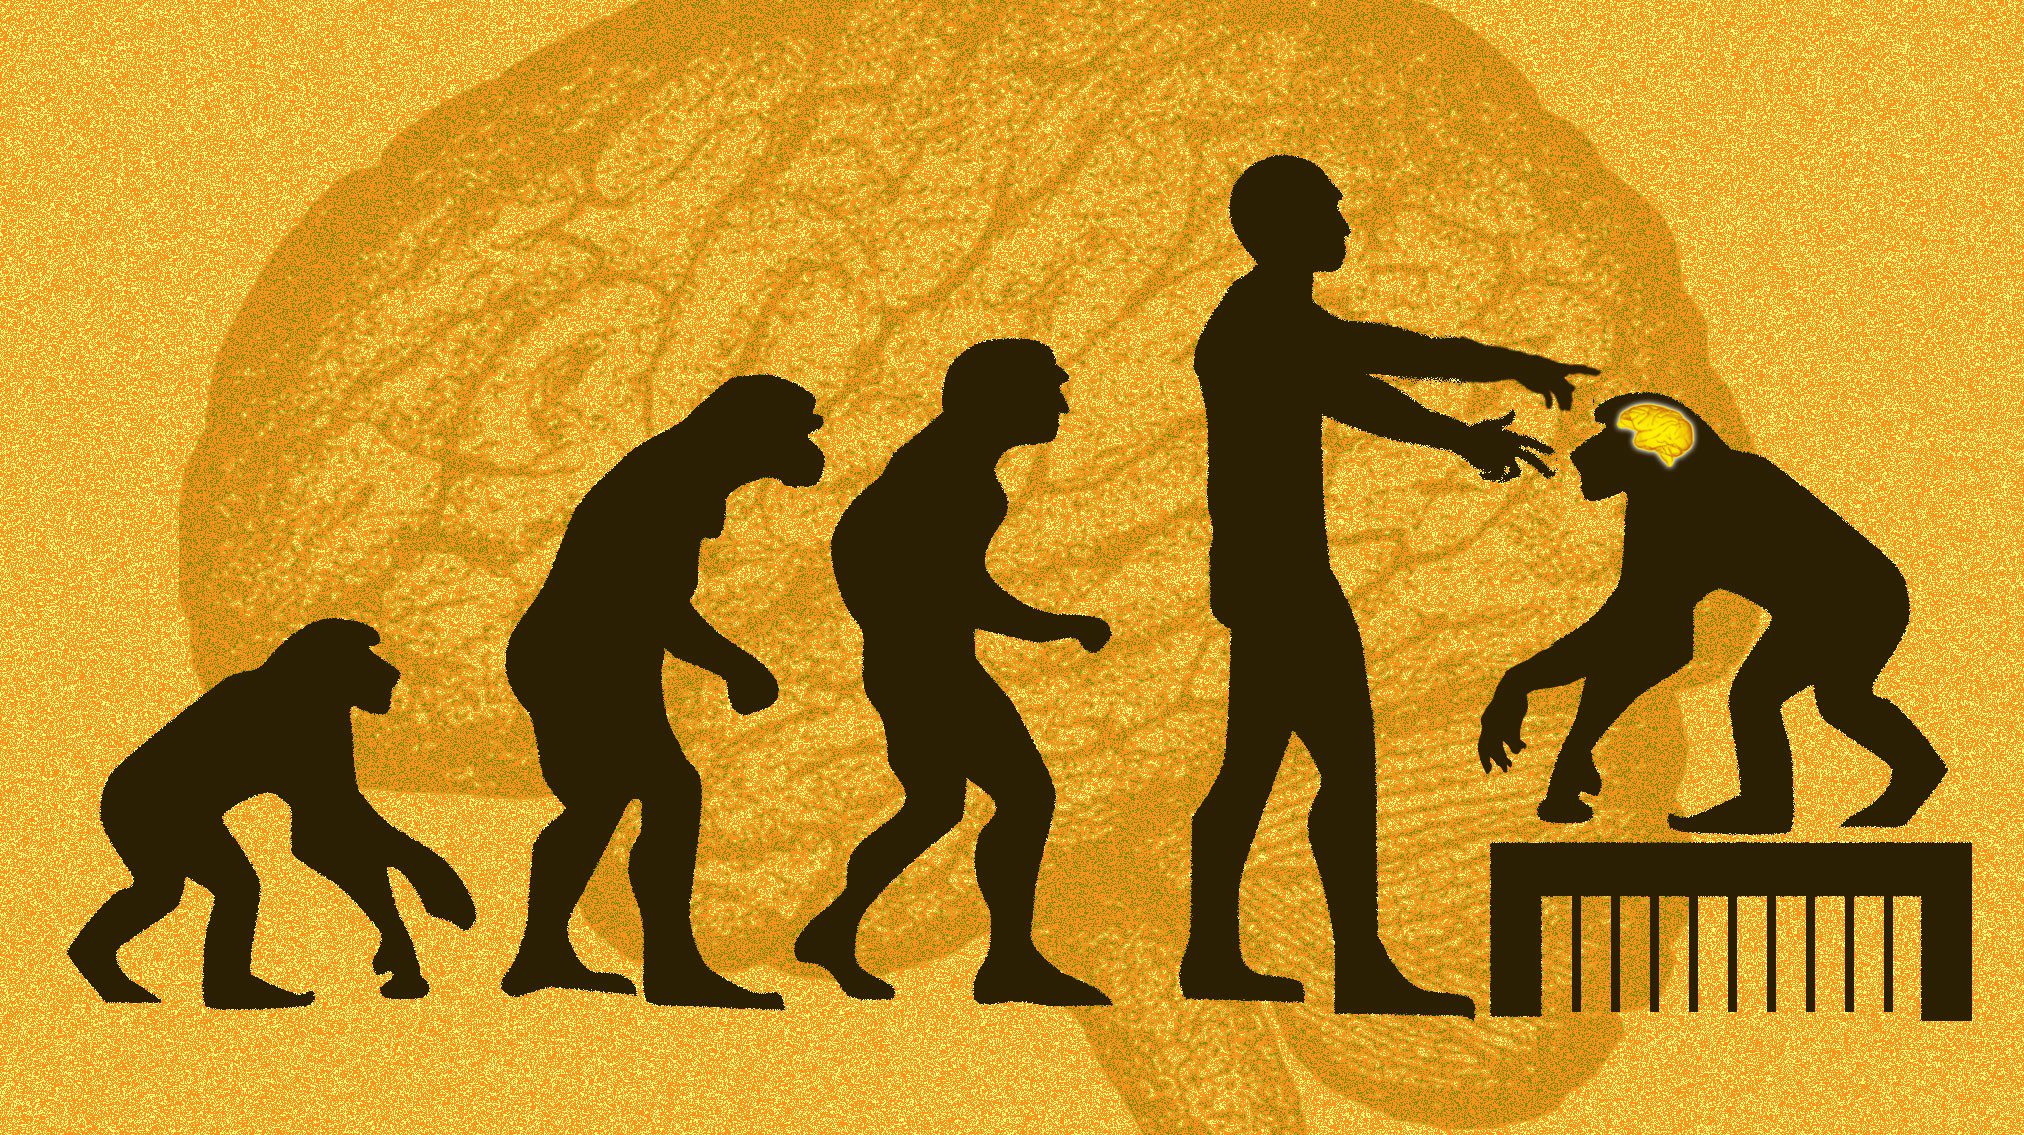 Co nám řeknou opice s lidským mozkovým genem? Kredit: Ms. Tech; Evolution / Wikimedia Commons.